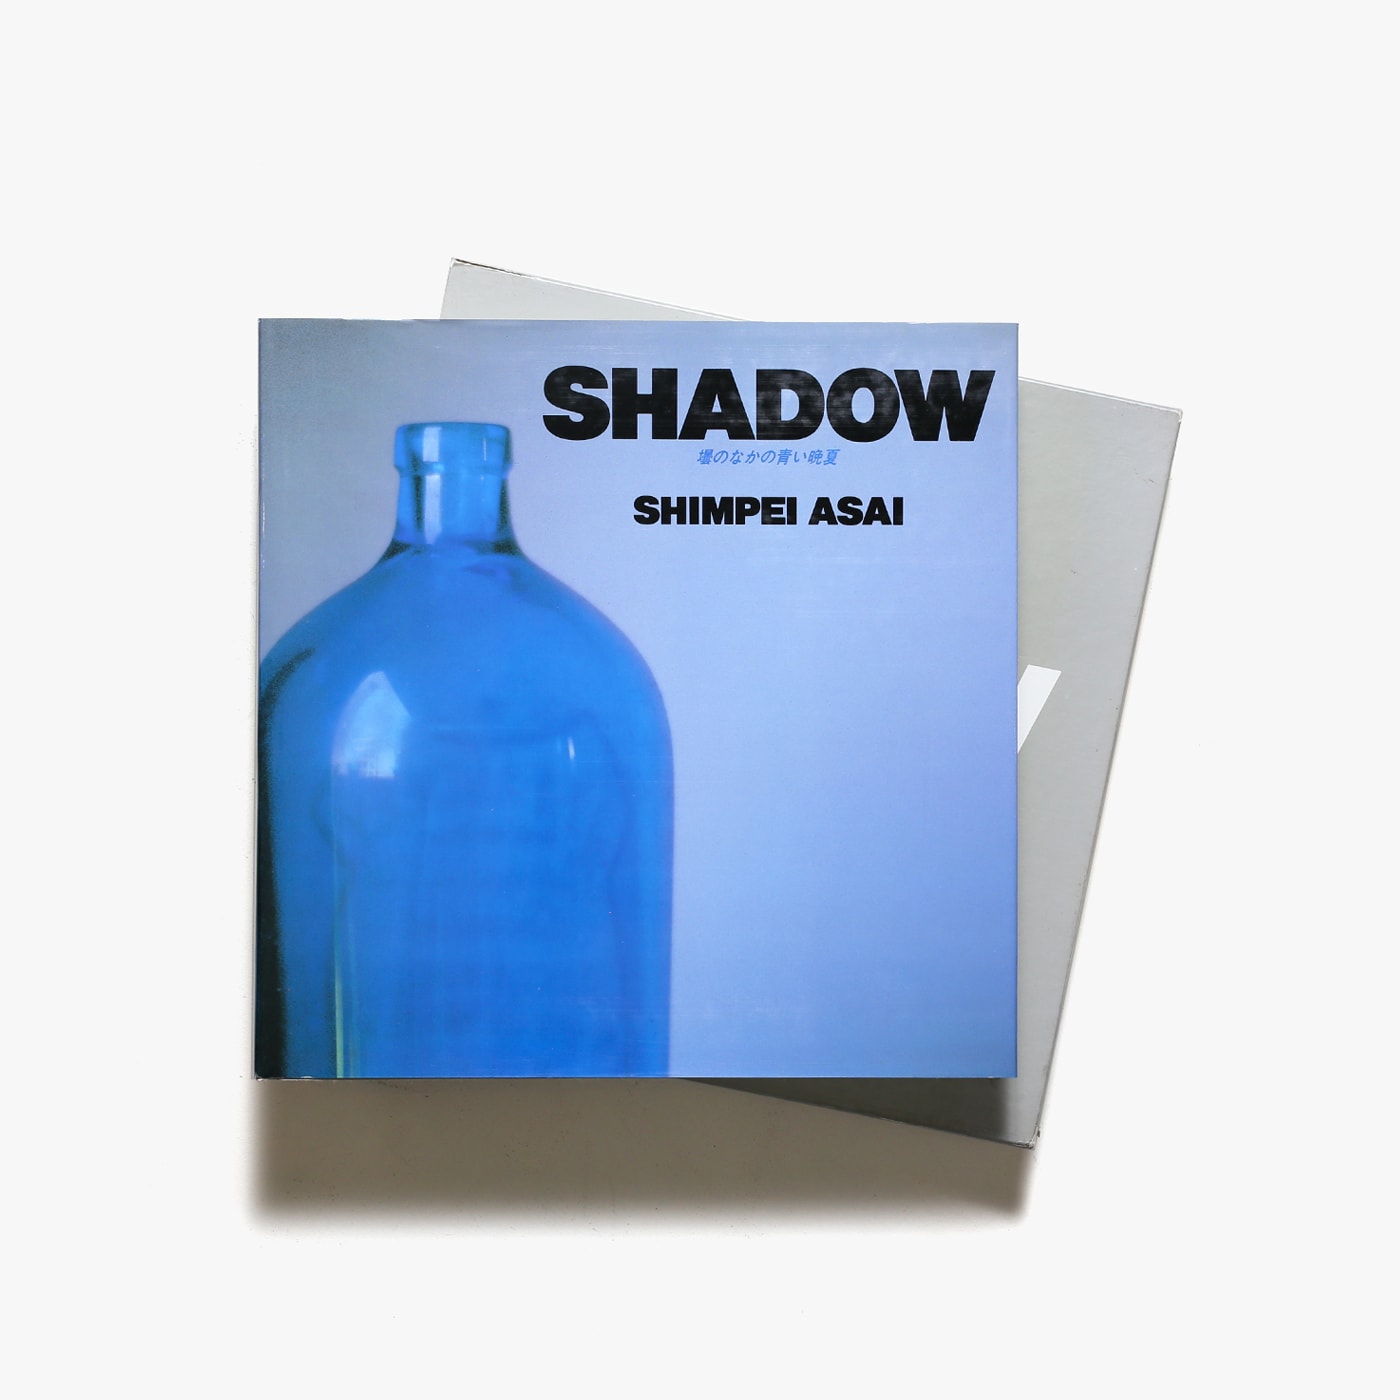 Shadow 壜のなかの青い晩夏